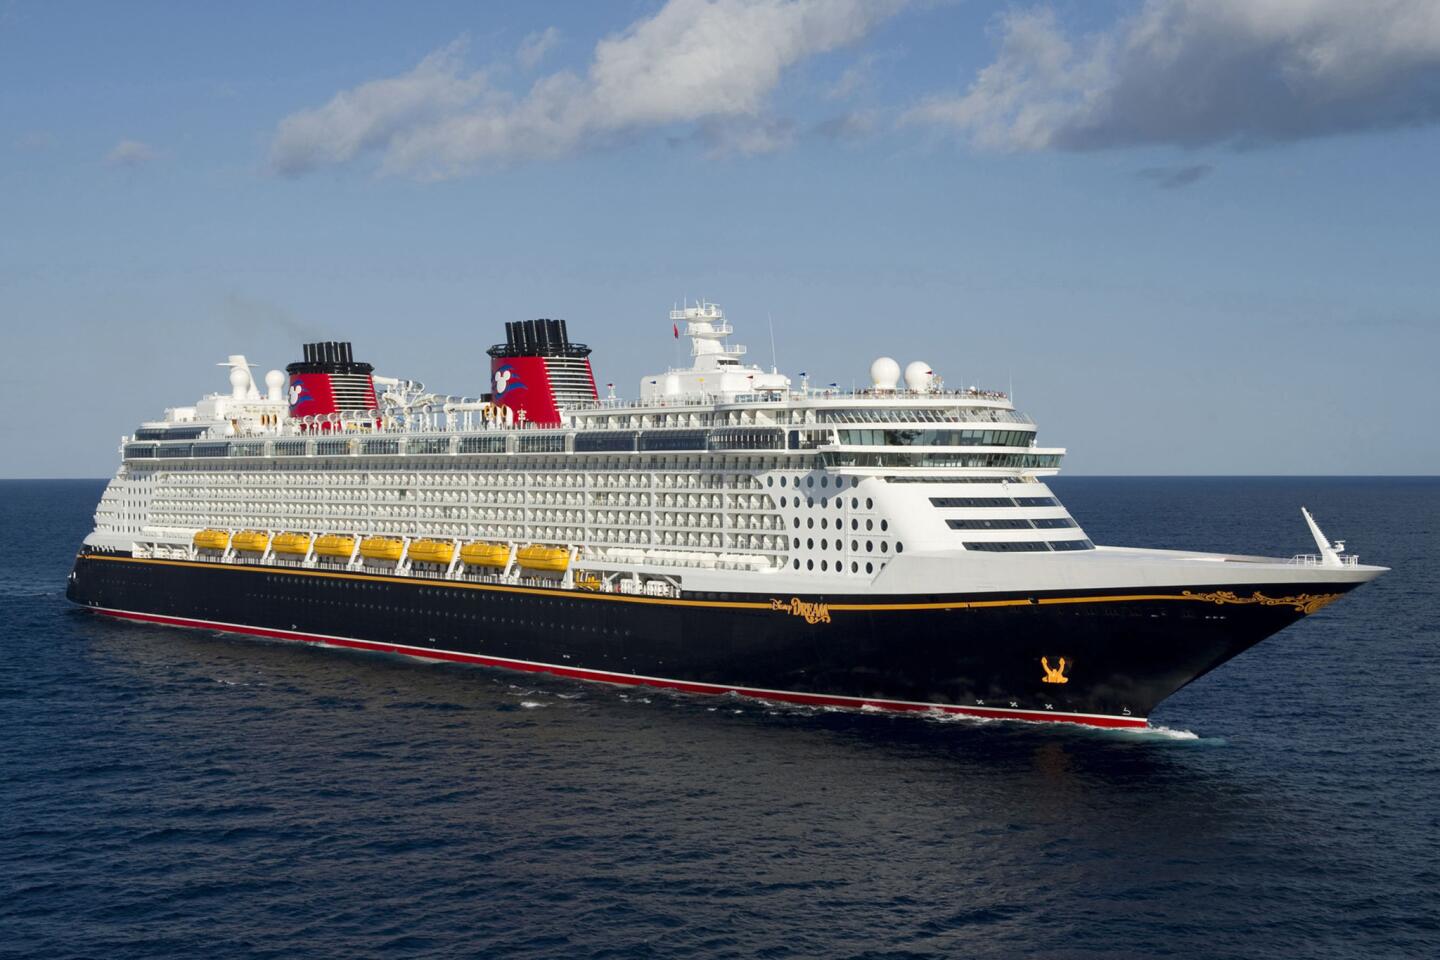 El Disney Dreams, con capacidad para 4,000 pasajeros, es un barco que te atrapa desde el momento que llegas al Puerto Cañaveral en Florida.